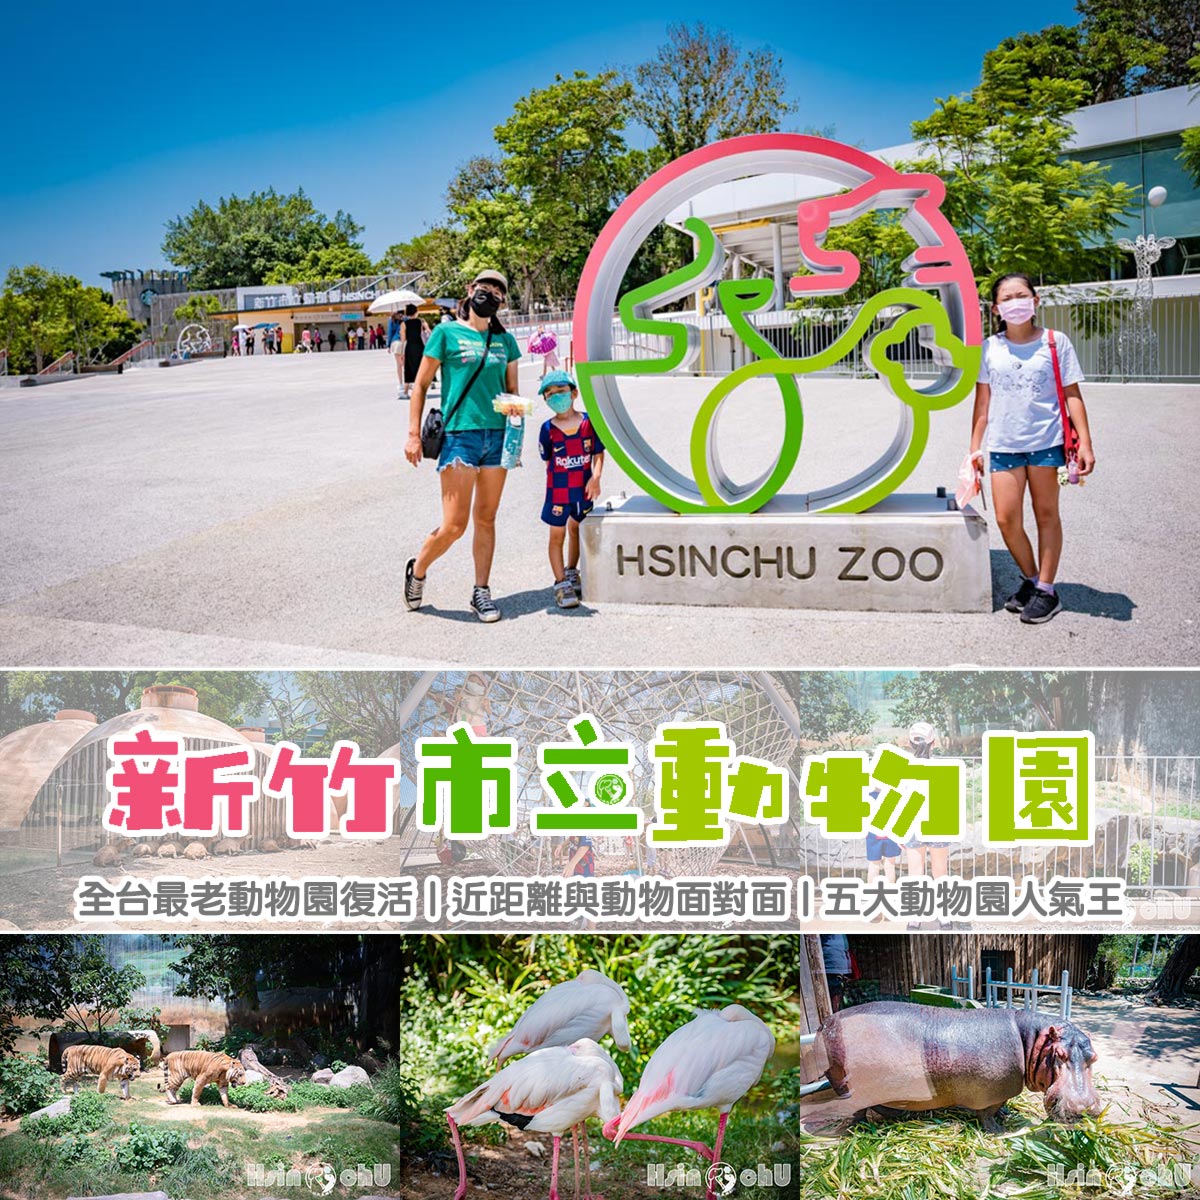 新竹東區景點〡新竹市立動物園〡全台最老動物園復活,近距離與動物面對面,五大動物園人氣王 @小菲親子玩樂生活